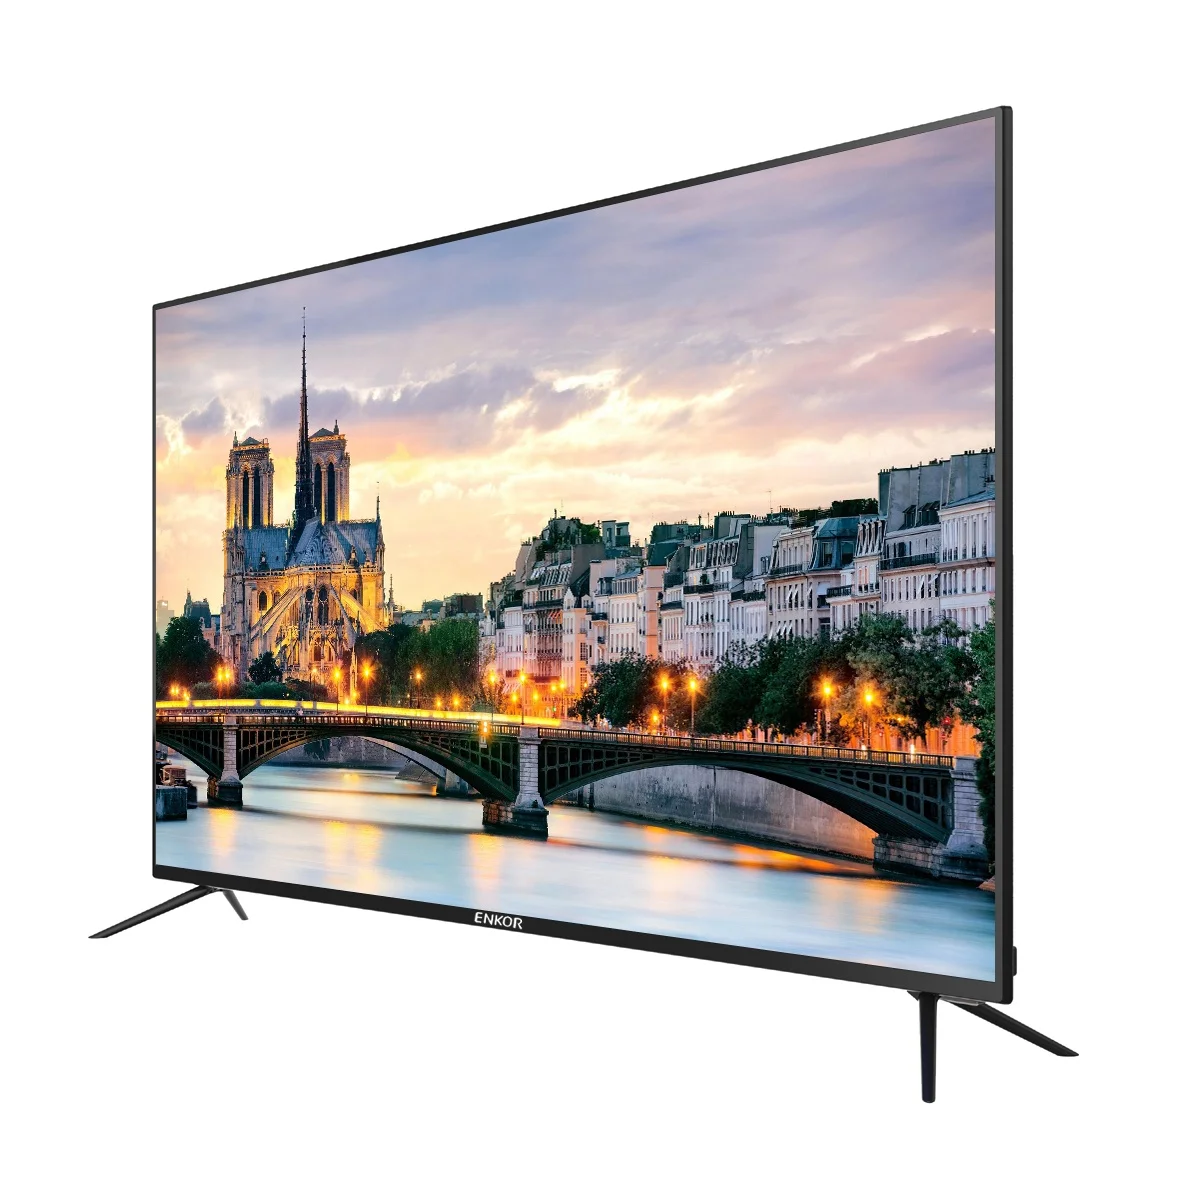 Купить телевизор смарт тв 43 дюймов лучший. Телевизор LG Smart TV 43 дюйма. LG телевизоры 43 дюйма смарт. Телевизор Konka led TV 43pr680n. Телевизор Vista 43va700.